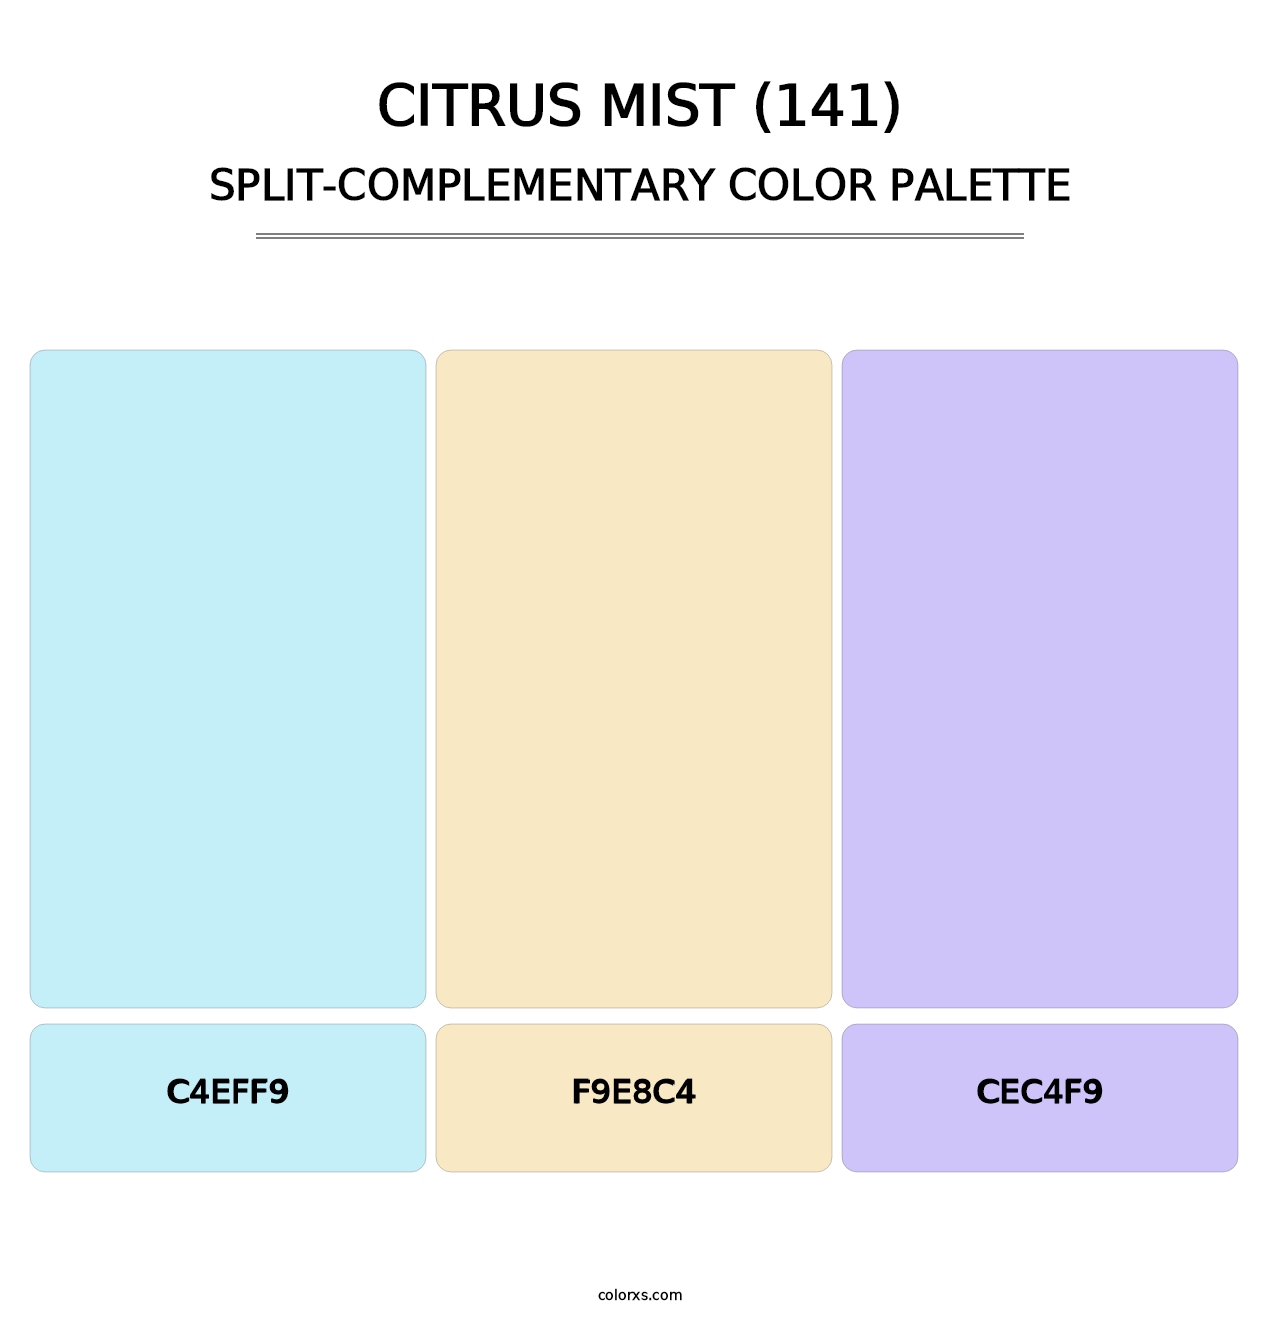 Citrus Mist (141) - Split-Complementary Color Palette